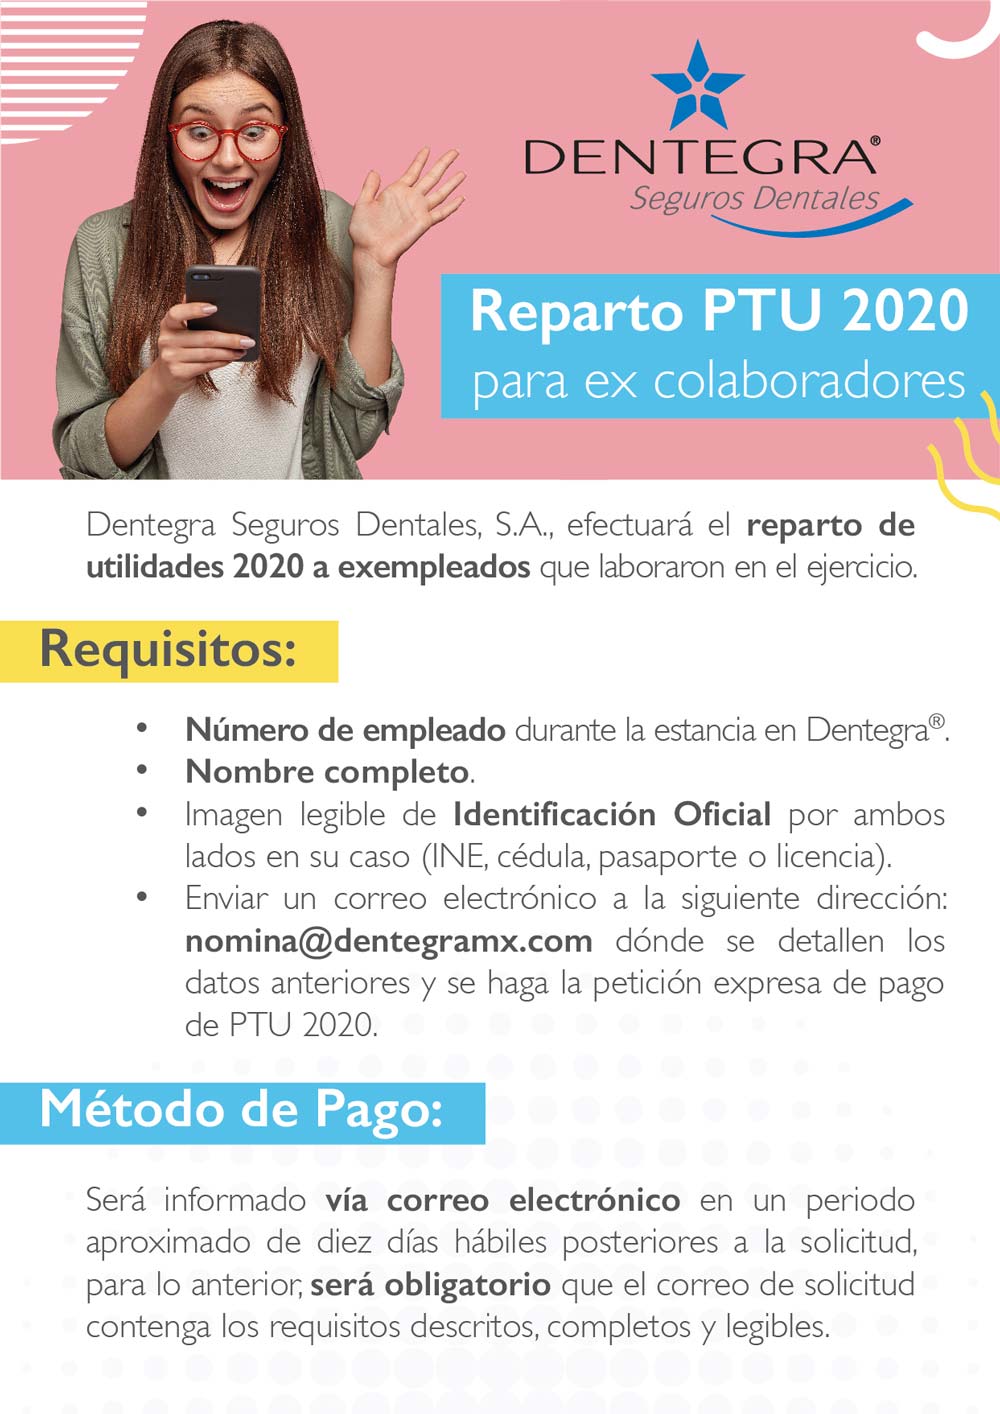 Dentegra® Seguros Dentales - Reparto PTU 2020 para ex colaboradores - Información completa